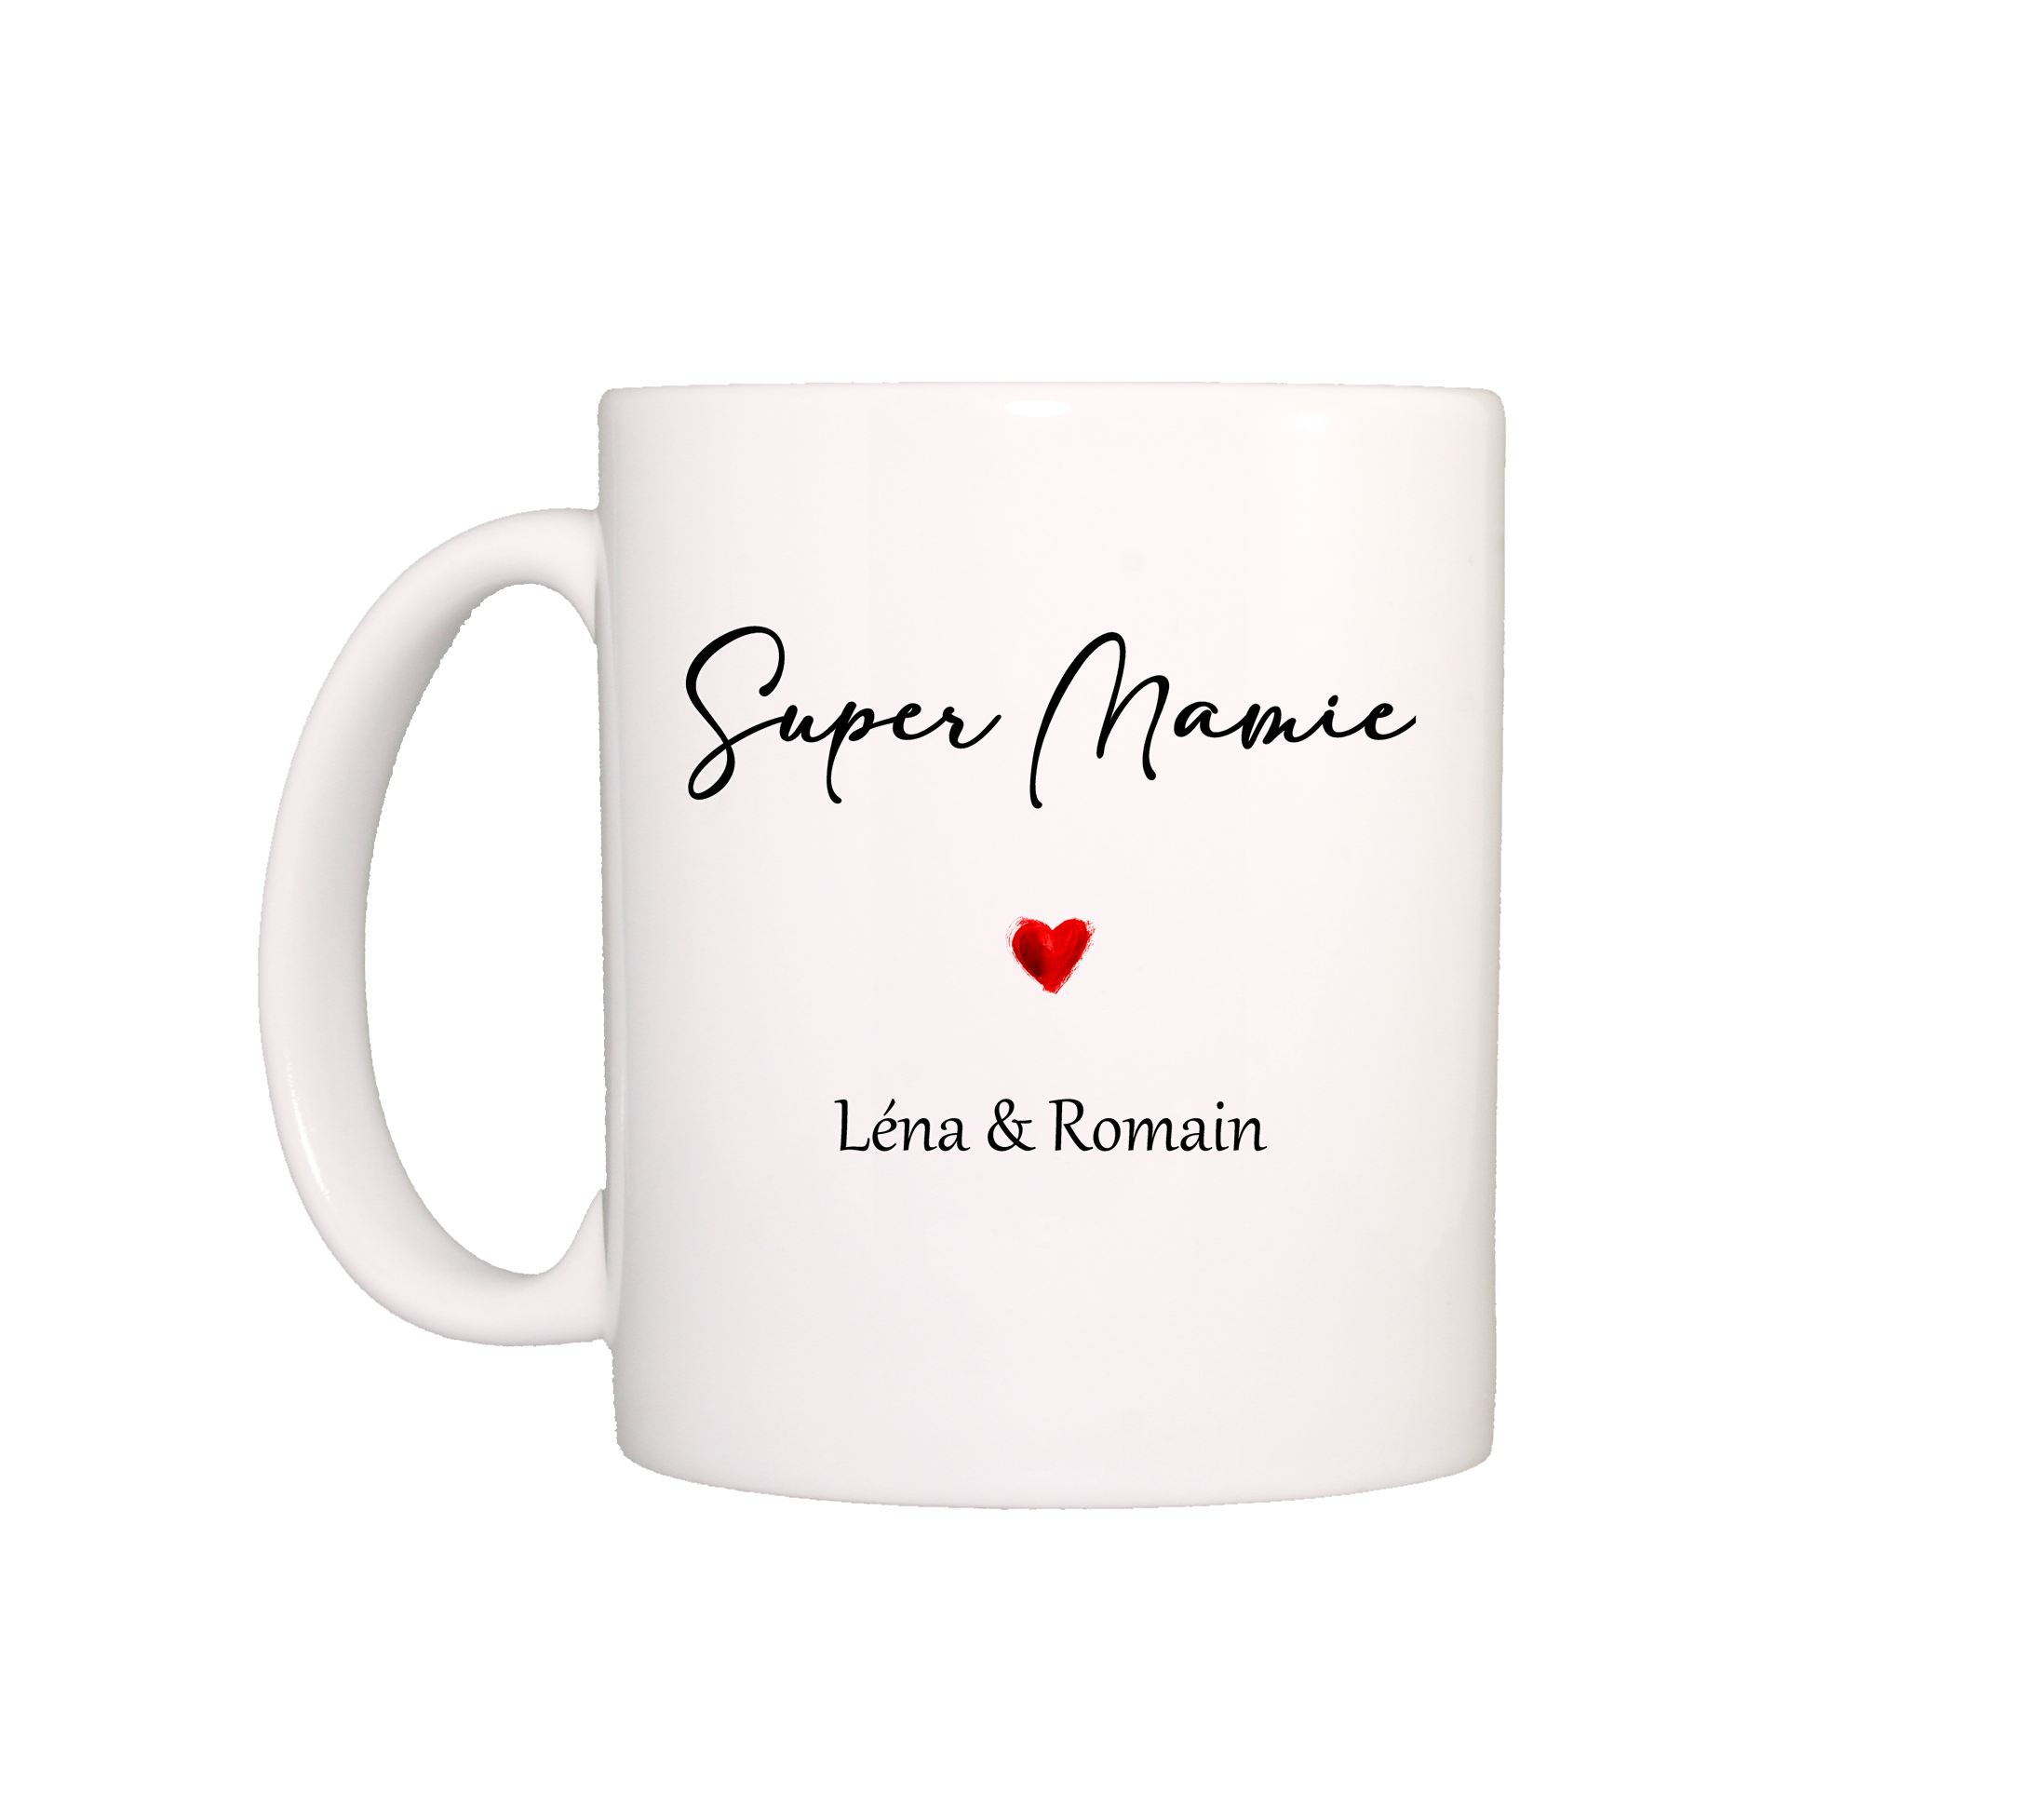 Mug Super Mamie